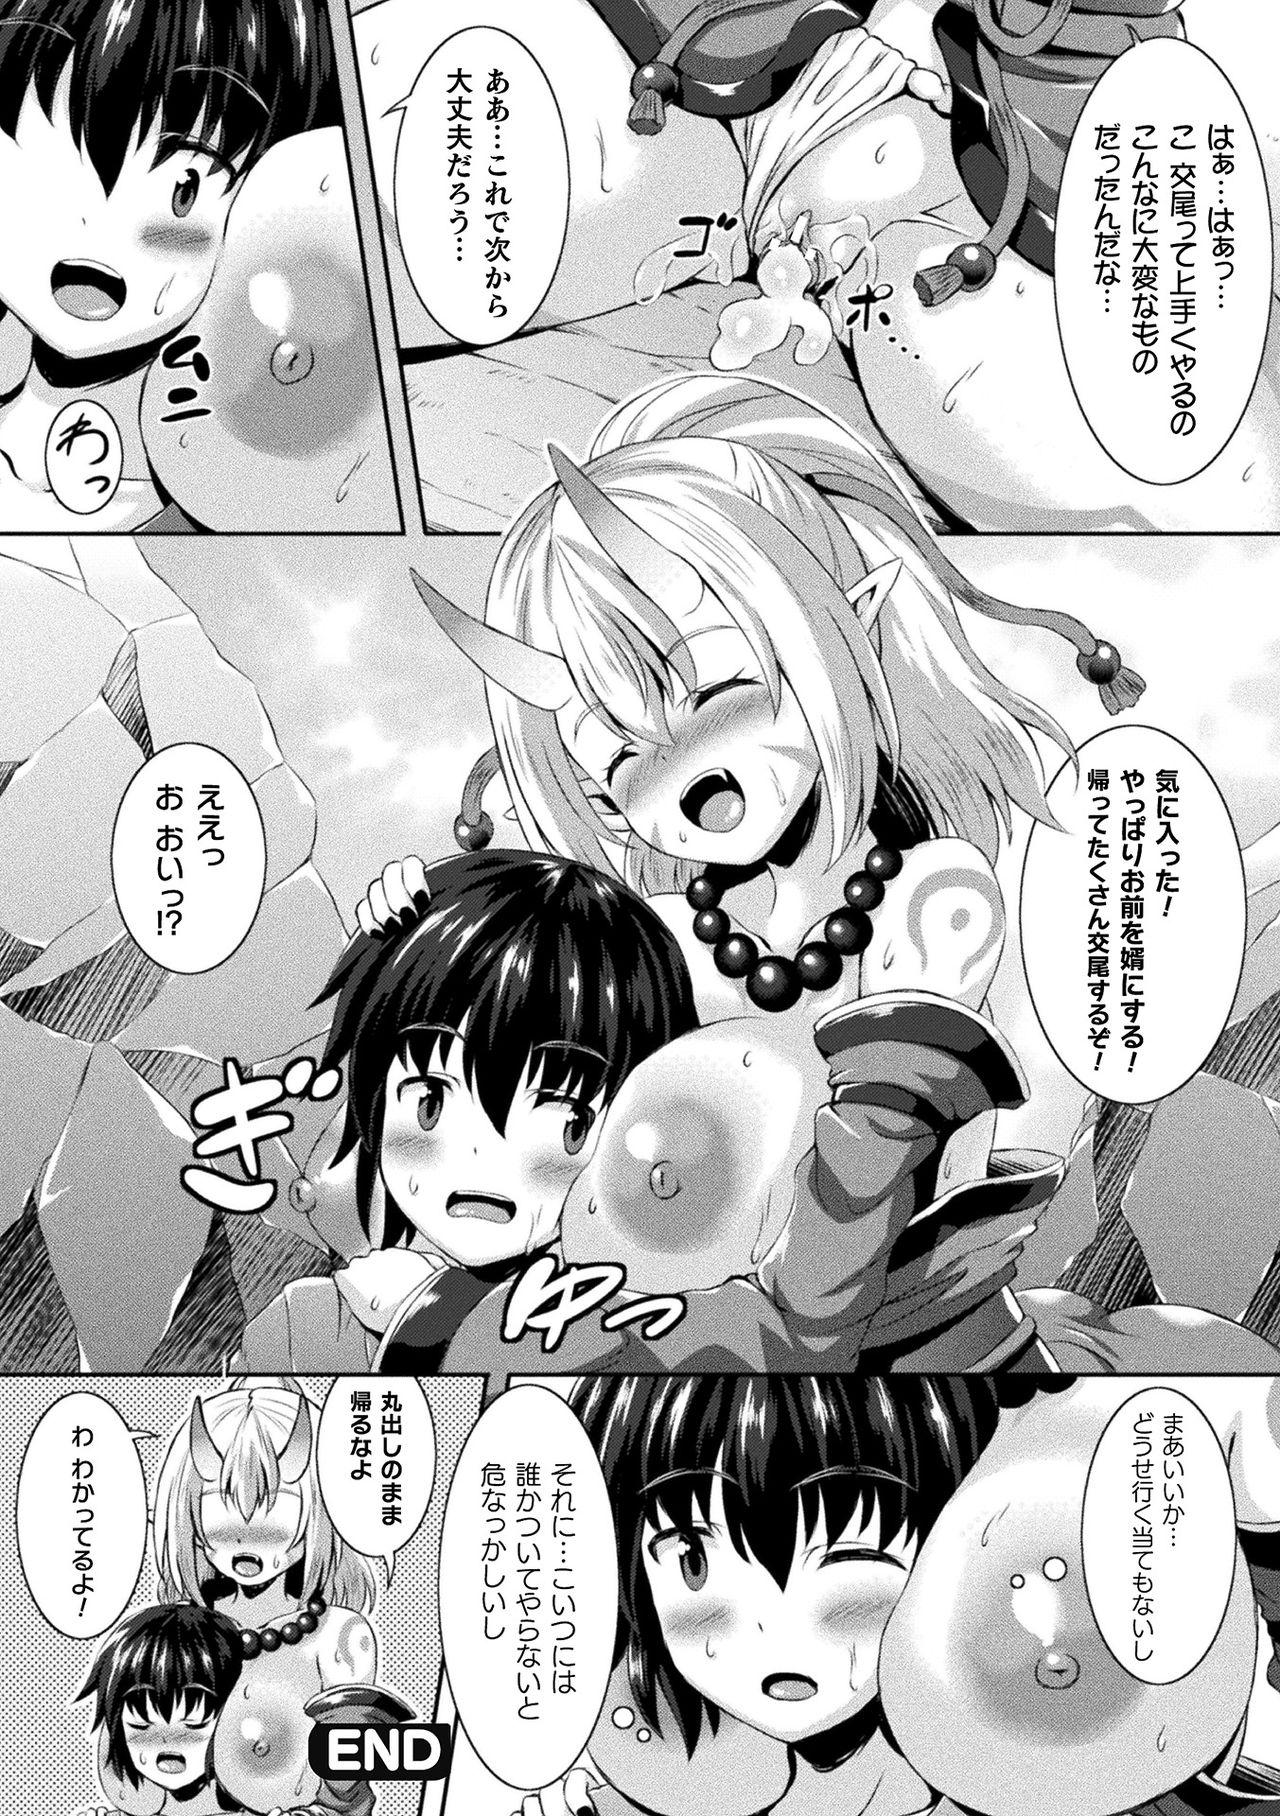 [Anthology] Bessatsu Comic Unreal Ponkotsu Fantasy Heroine H ~Doji o Funde Gyakuten Saretari Ero Trap ni Hamattari!?~ Vol. 1 [Digital] 60